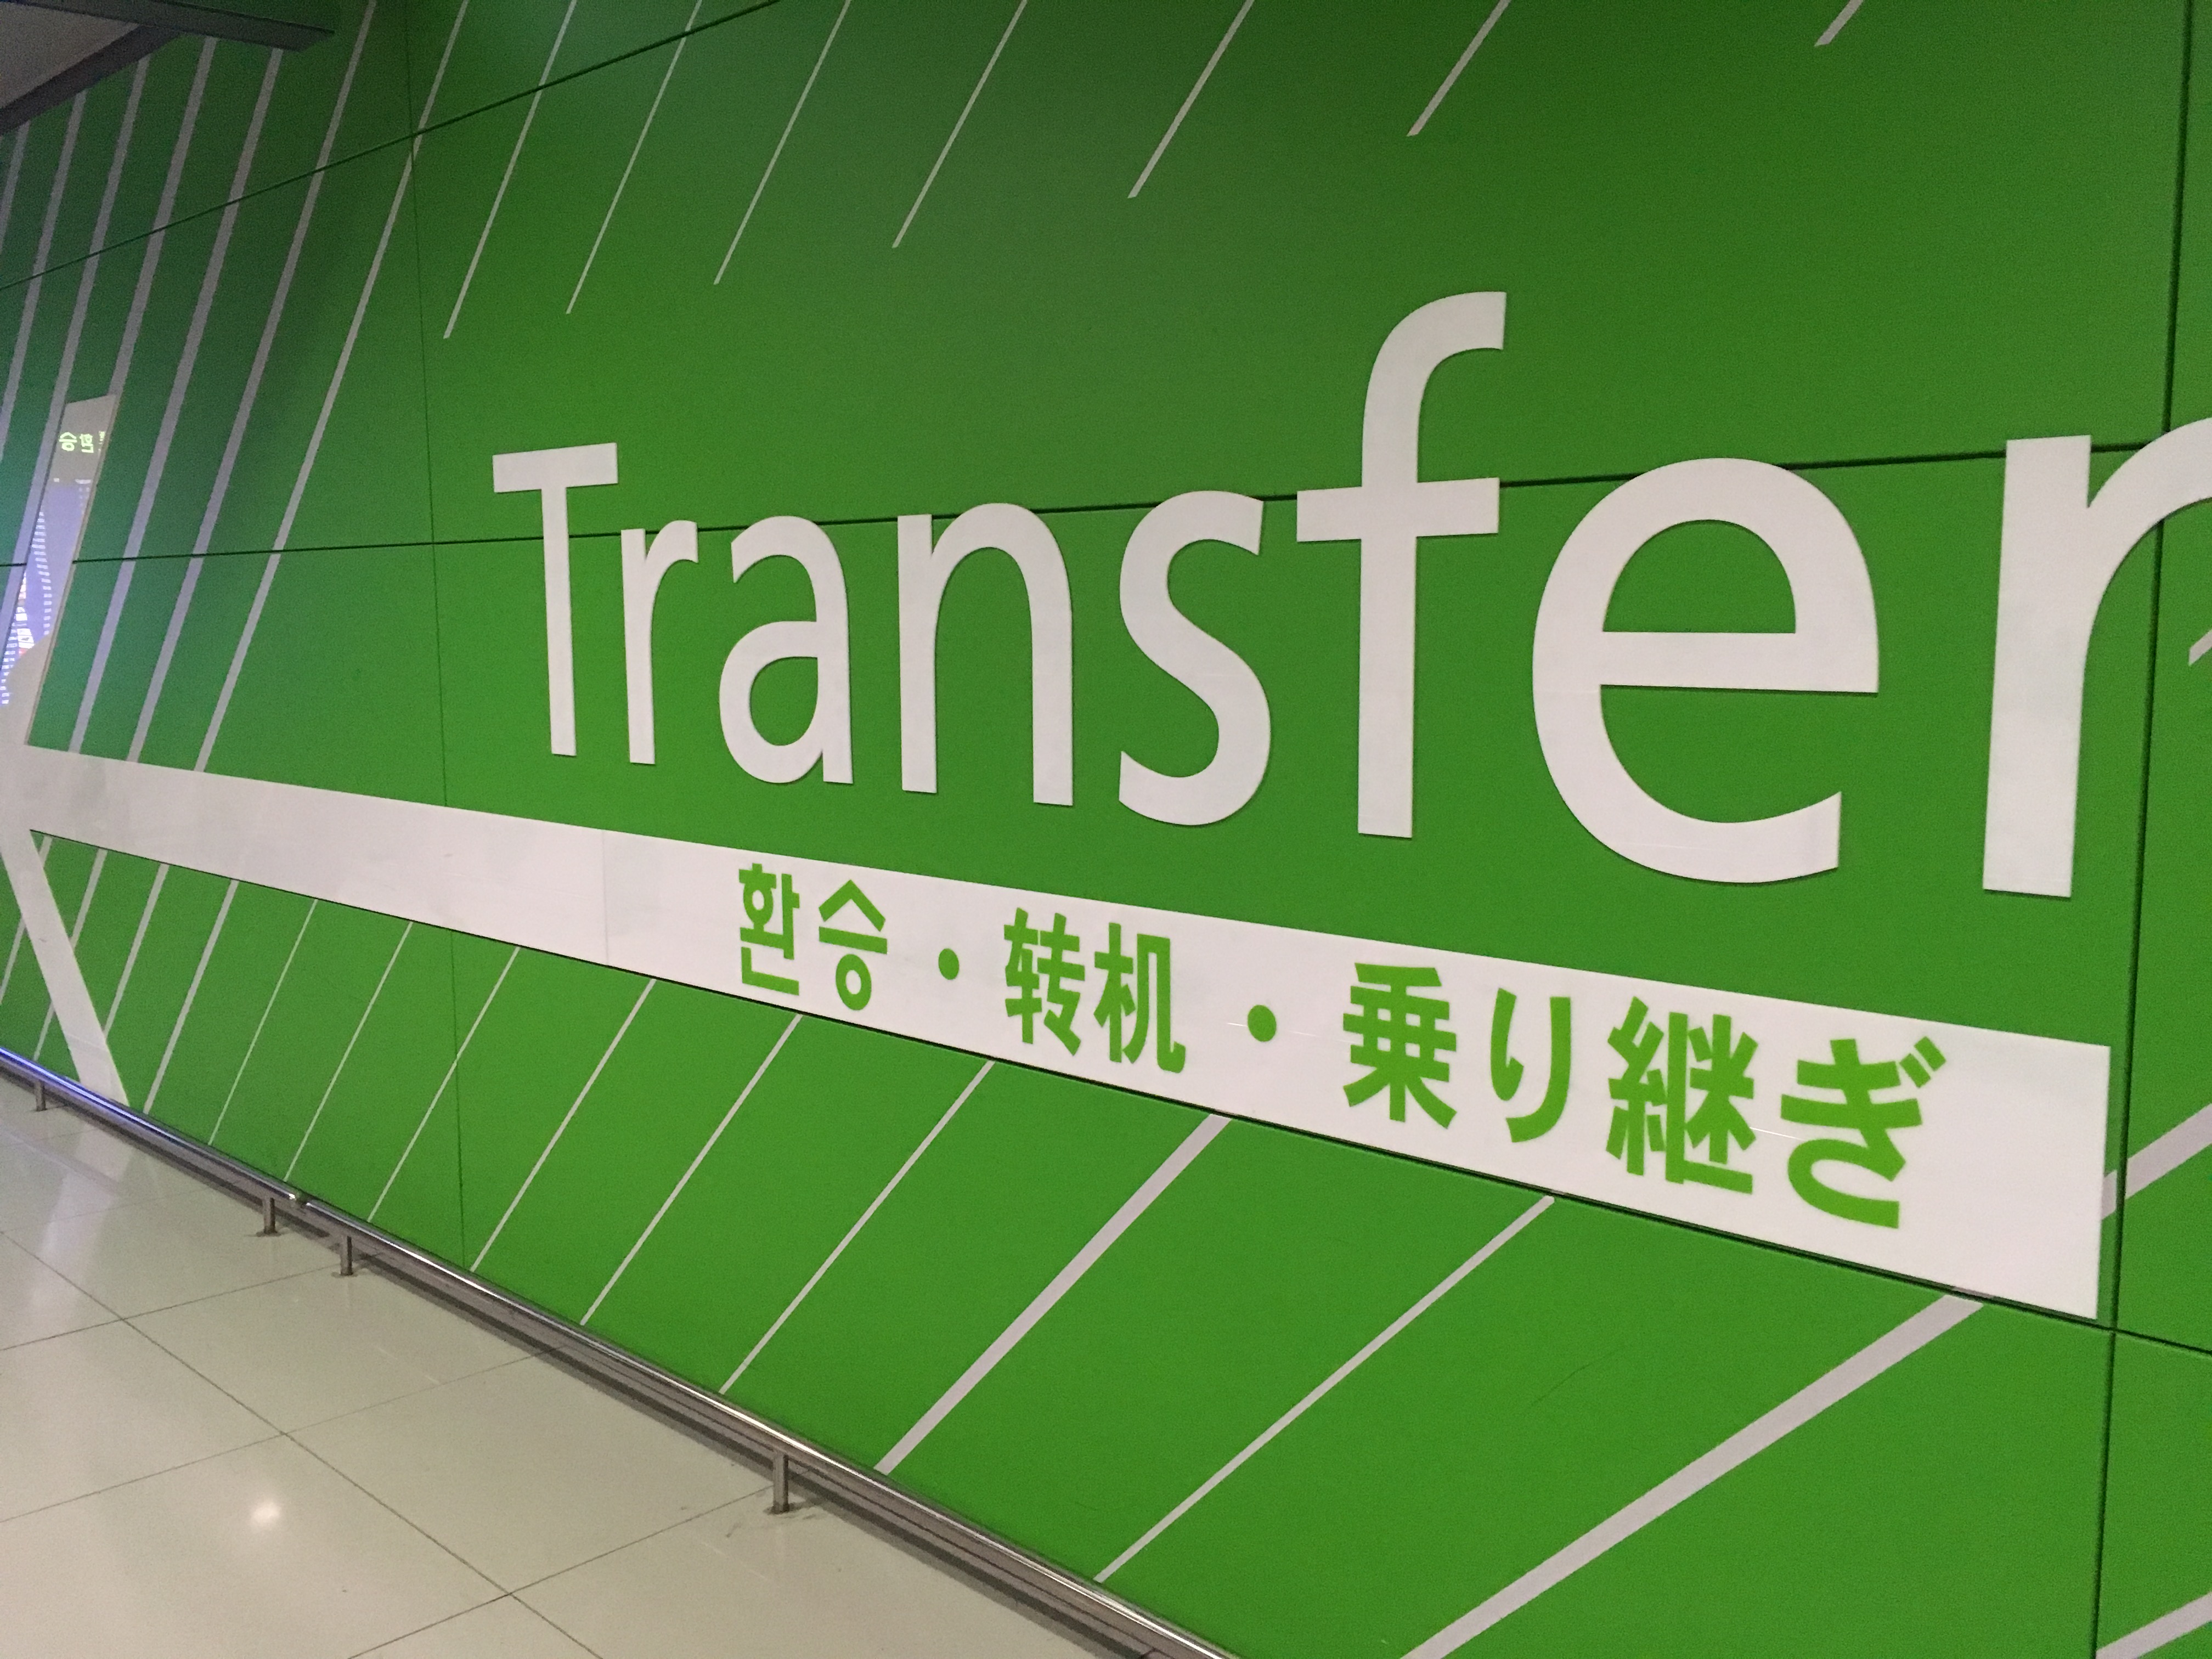 仁川 インチョン 空港乗り継ぎ トランジット 方法と待ち時間の過ごし方 ロコタビ